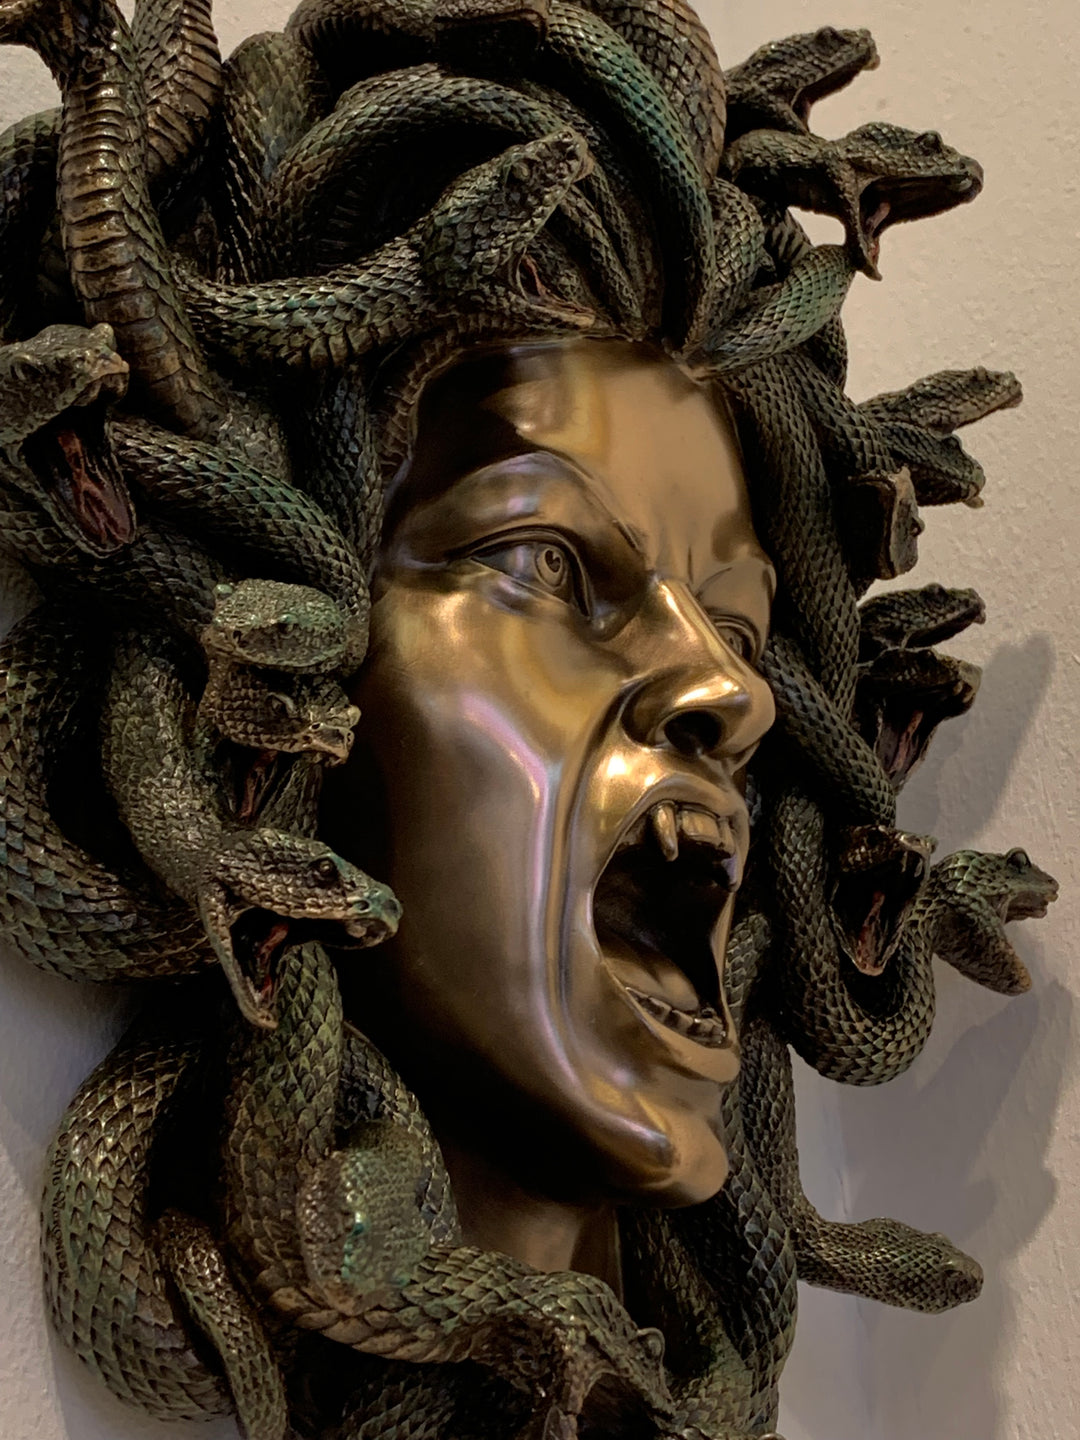 Greek monster Medusa head sculpture